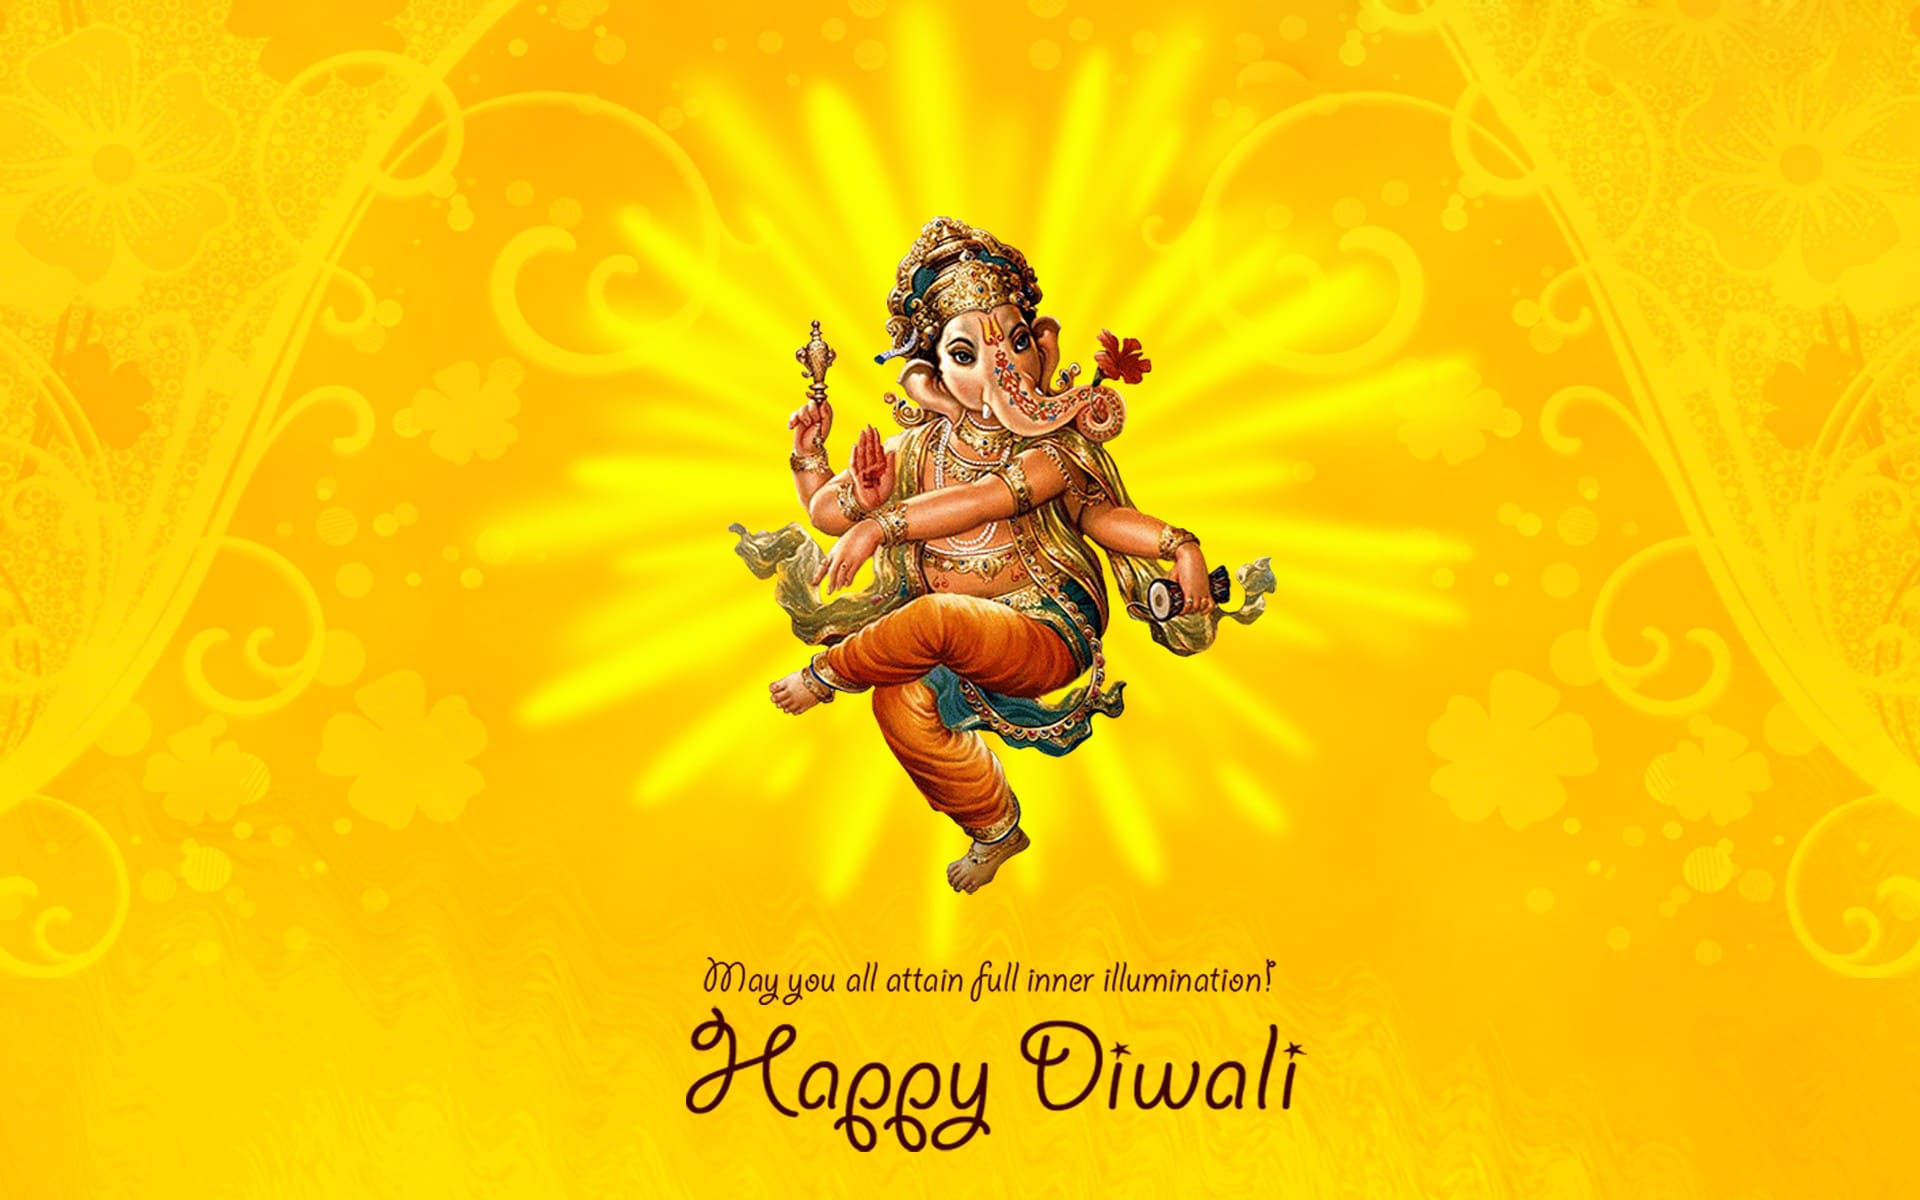 Happy Diwali With Ganesh - HD Wallpaper 